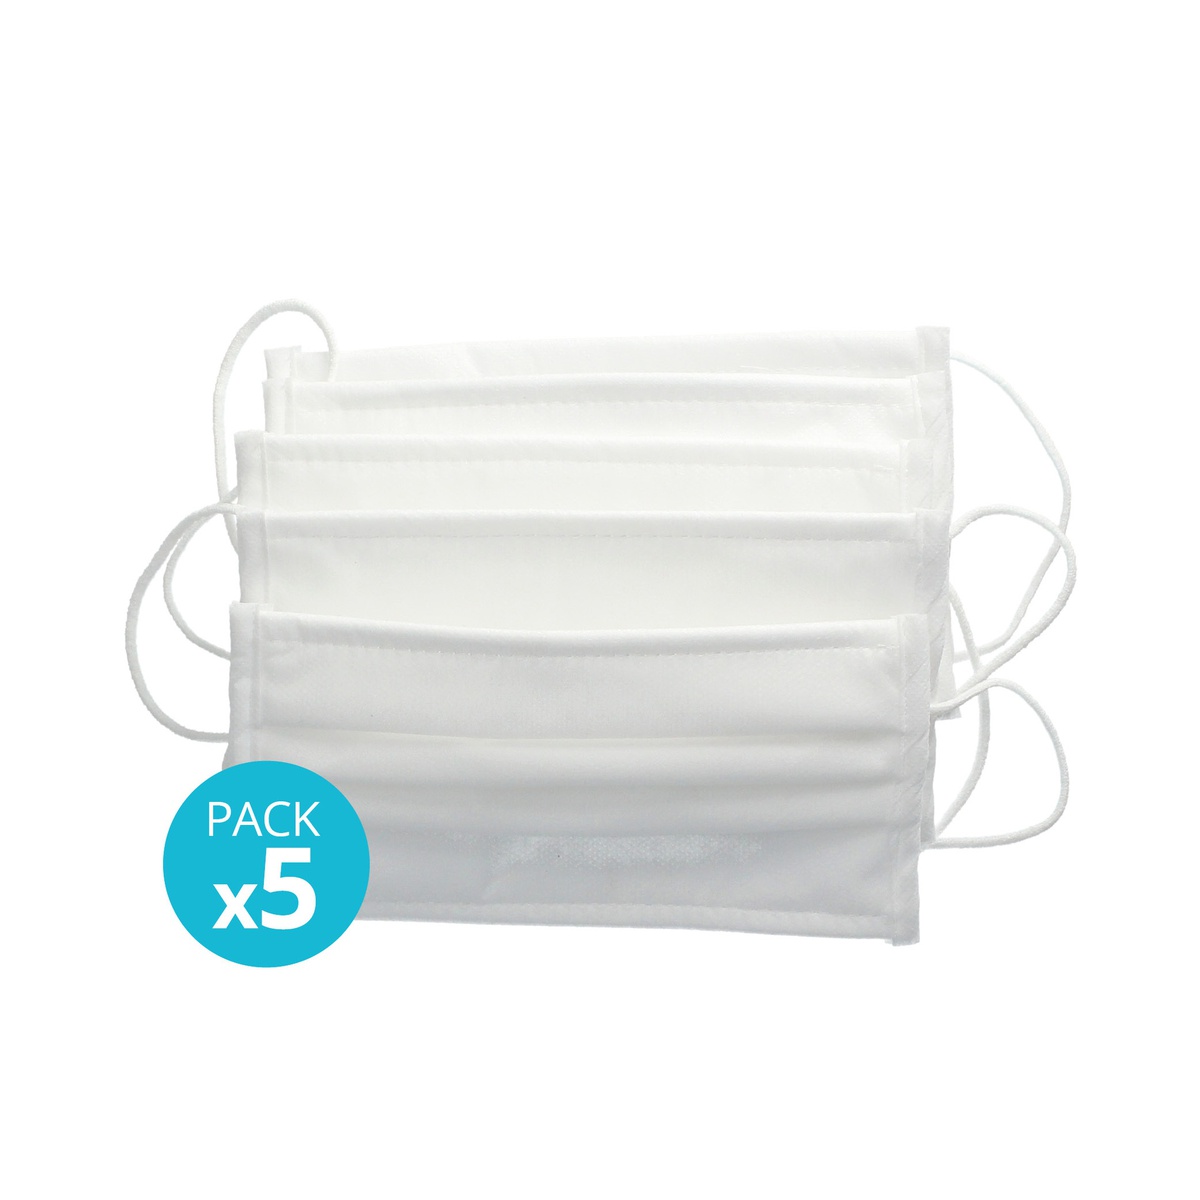 Pack 5 Masques hygiéniques lavables/réutilisables